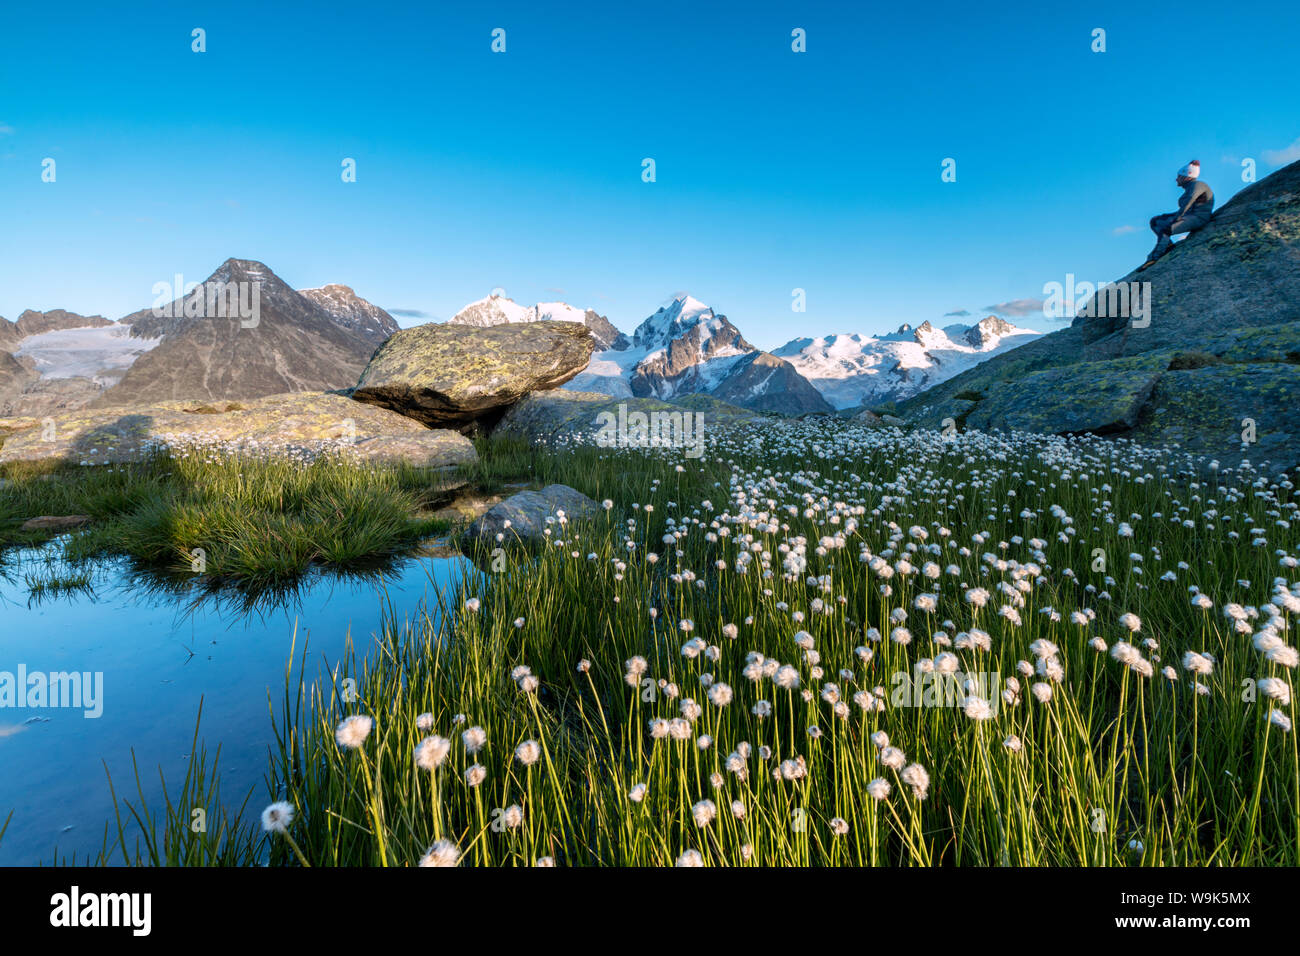 Escursionista sulle rocce si ammira la fioritura di cotone di erba, Fuorcla Surlej,, St Moritz, Canton Grigioni, Engadina, Svizzera, Europa Foto Stock